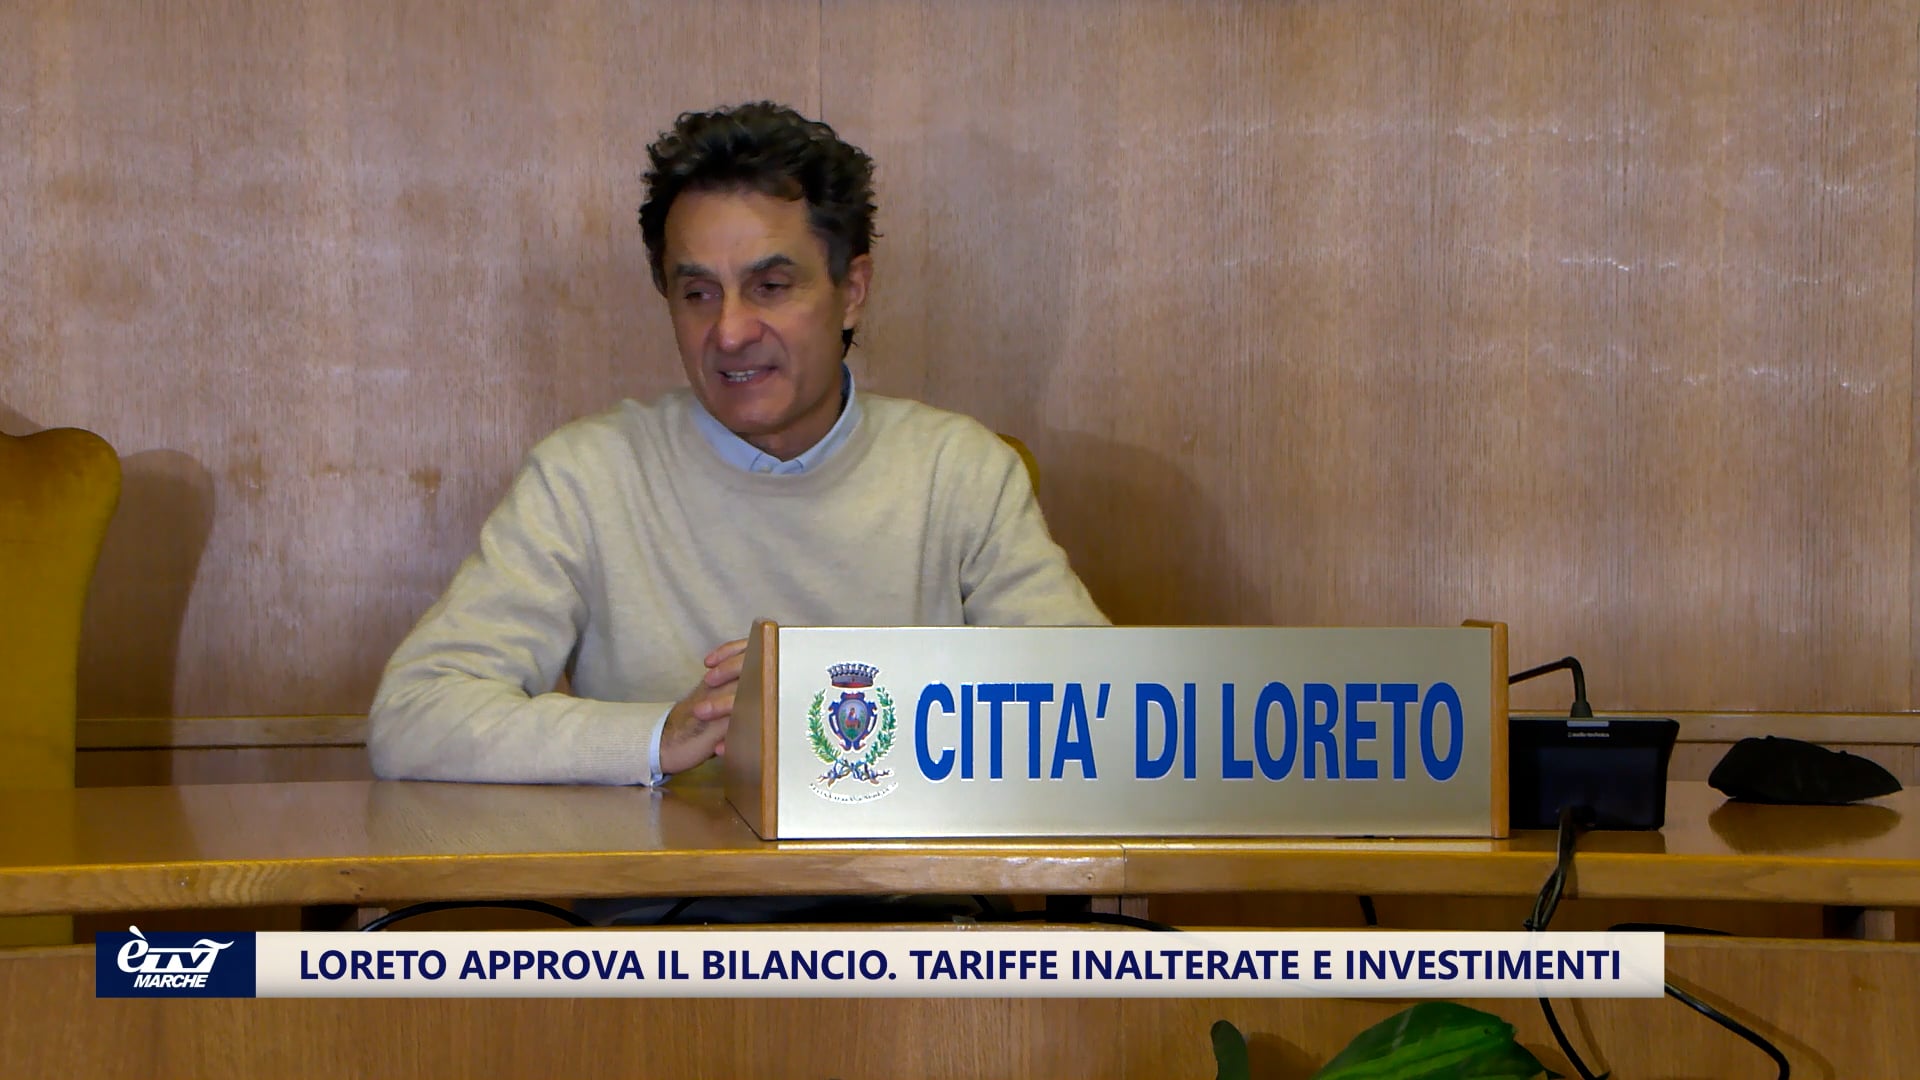 Loreto approva il bilancio. Tariffe inalterate e investimenti - VIDEO